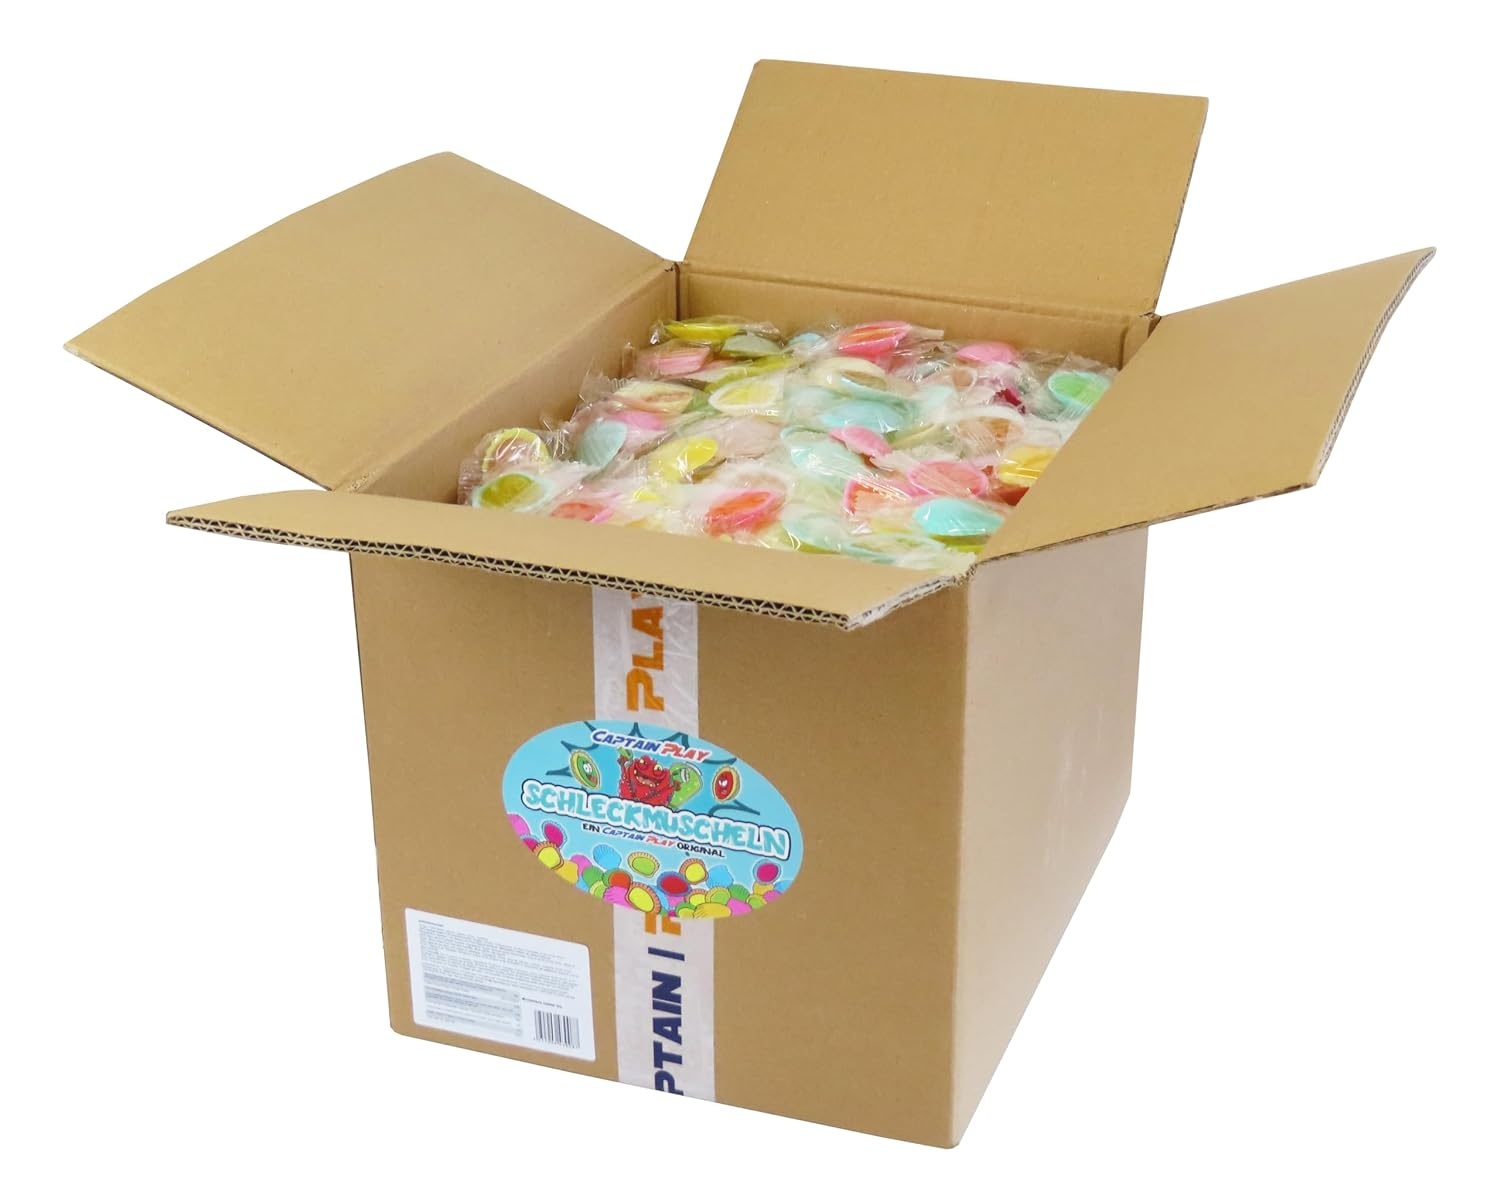 CAPTAIN PLAY Schleckmuscheln einzeln verpackt, 1.200 Stück,  Karneval Wurfmaterial, Süßigkeiten Großpackungen